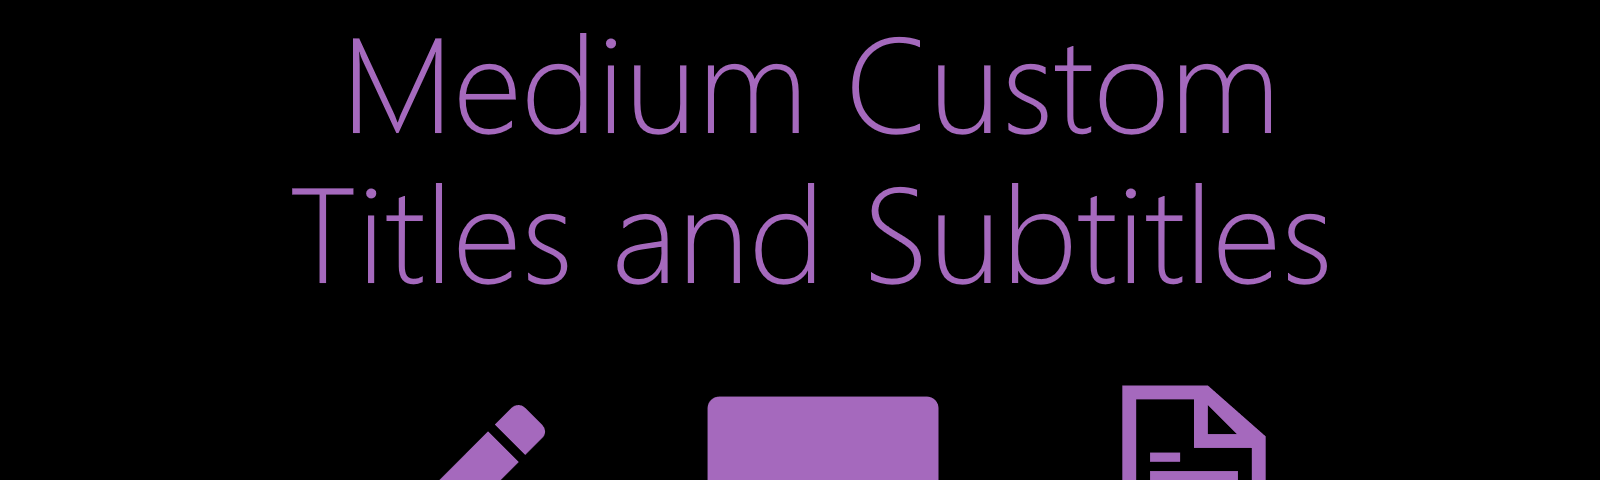 medium custom titles, medium custom subtitles, medium title customize, medium article format, medium story format, medium